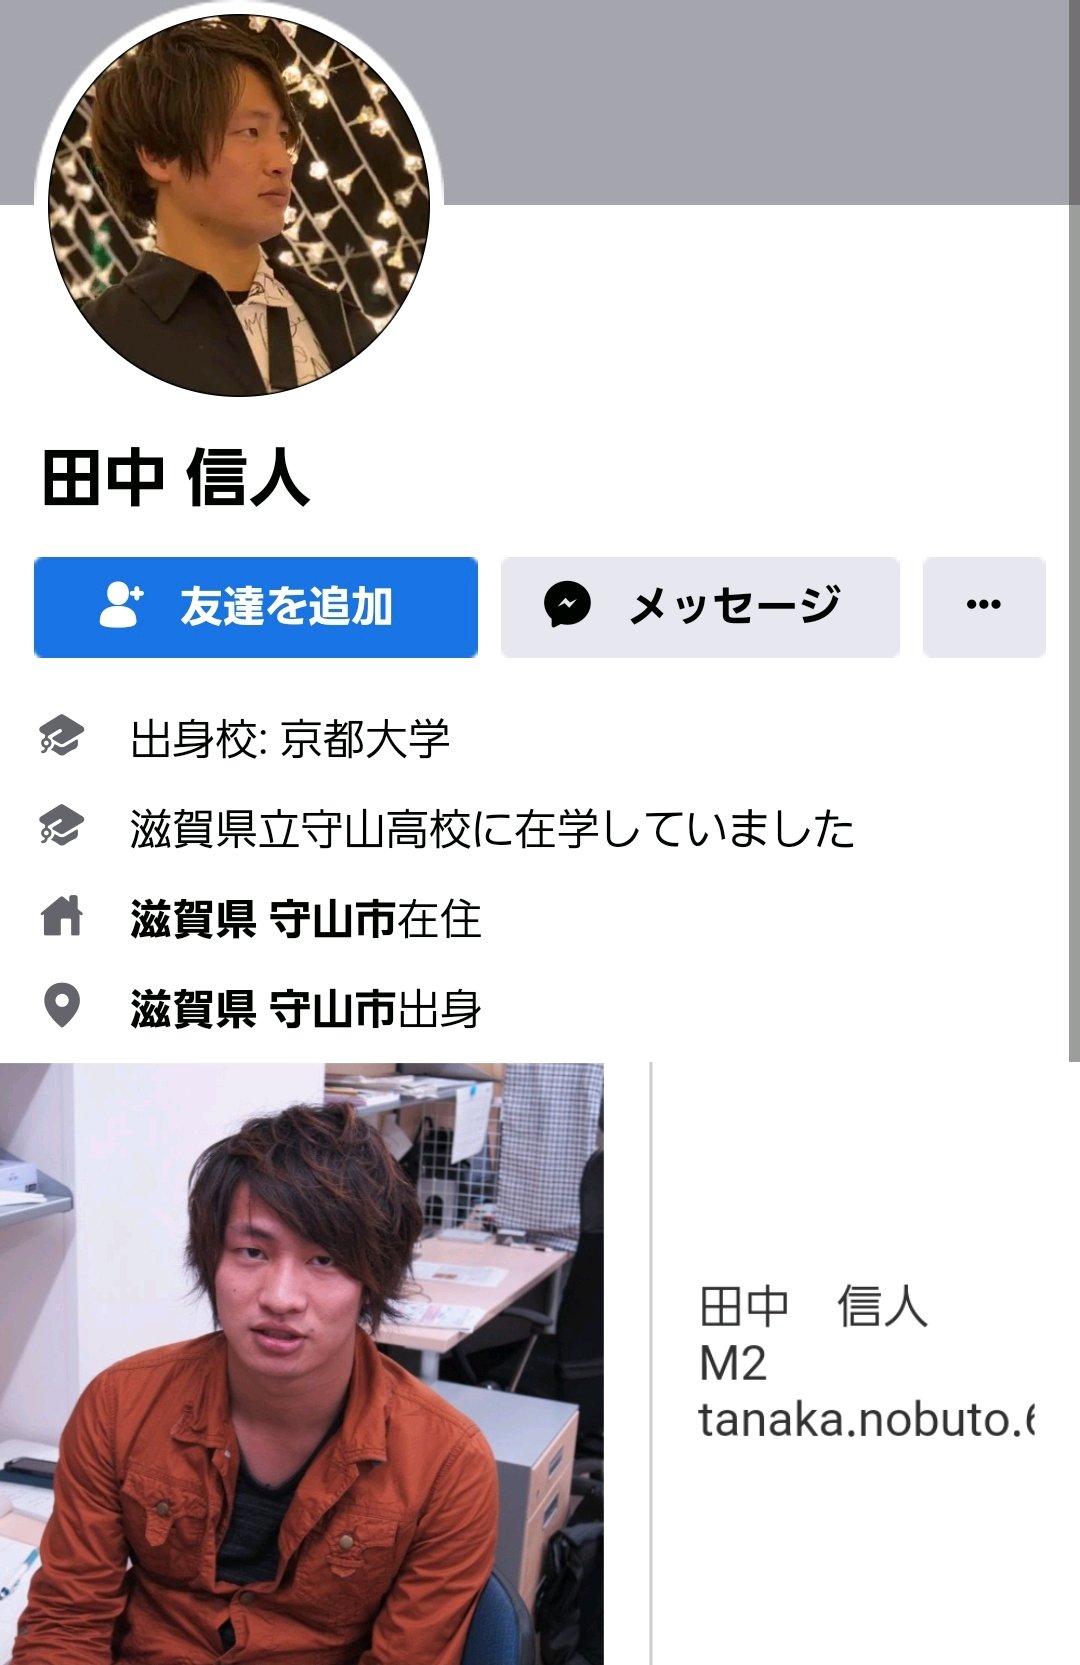 田中信人容疑者のSNS・Facebook(フェイスブック)アカウント